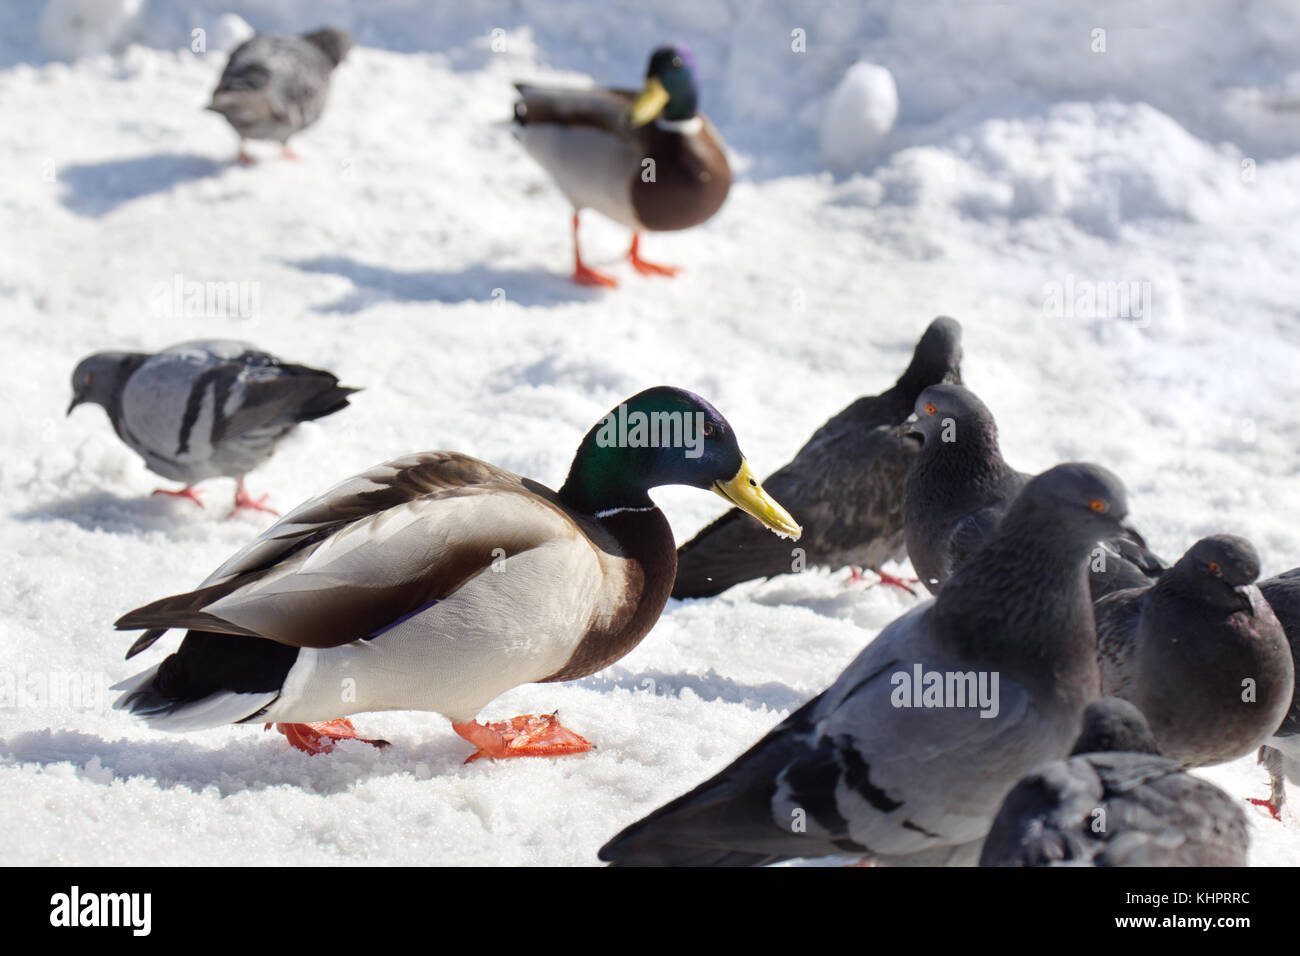 Stockente mit Tauben essen ein brotkrumen in der Nähe des zugefrorenen Fluss im Winter. Stockfoto